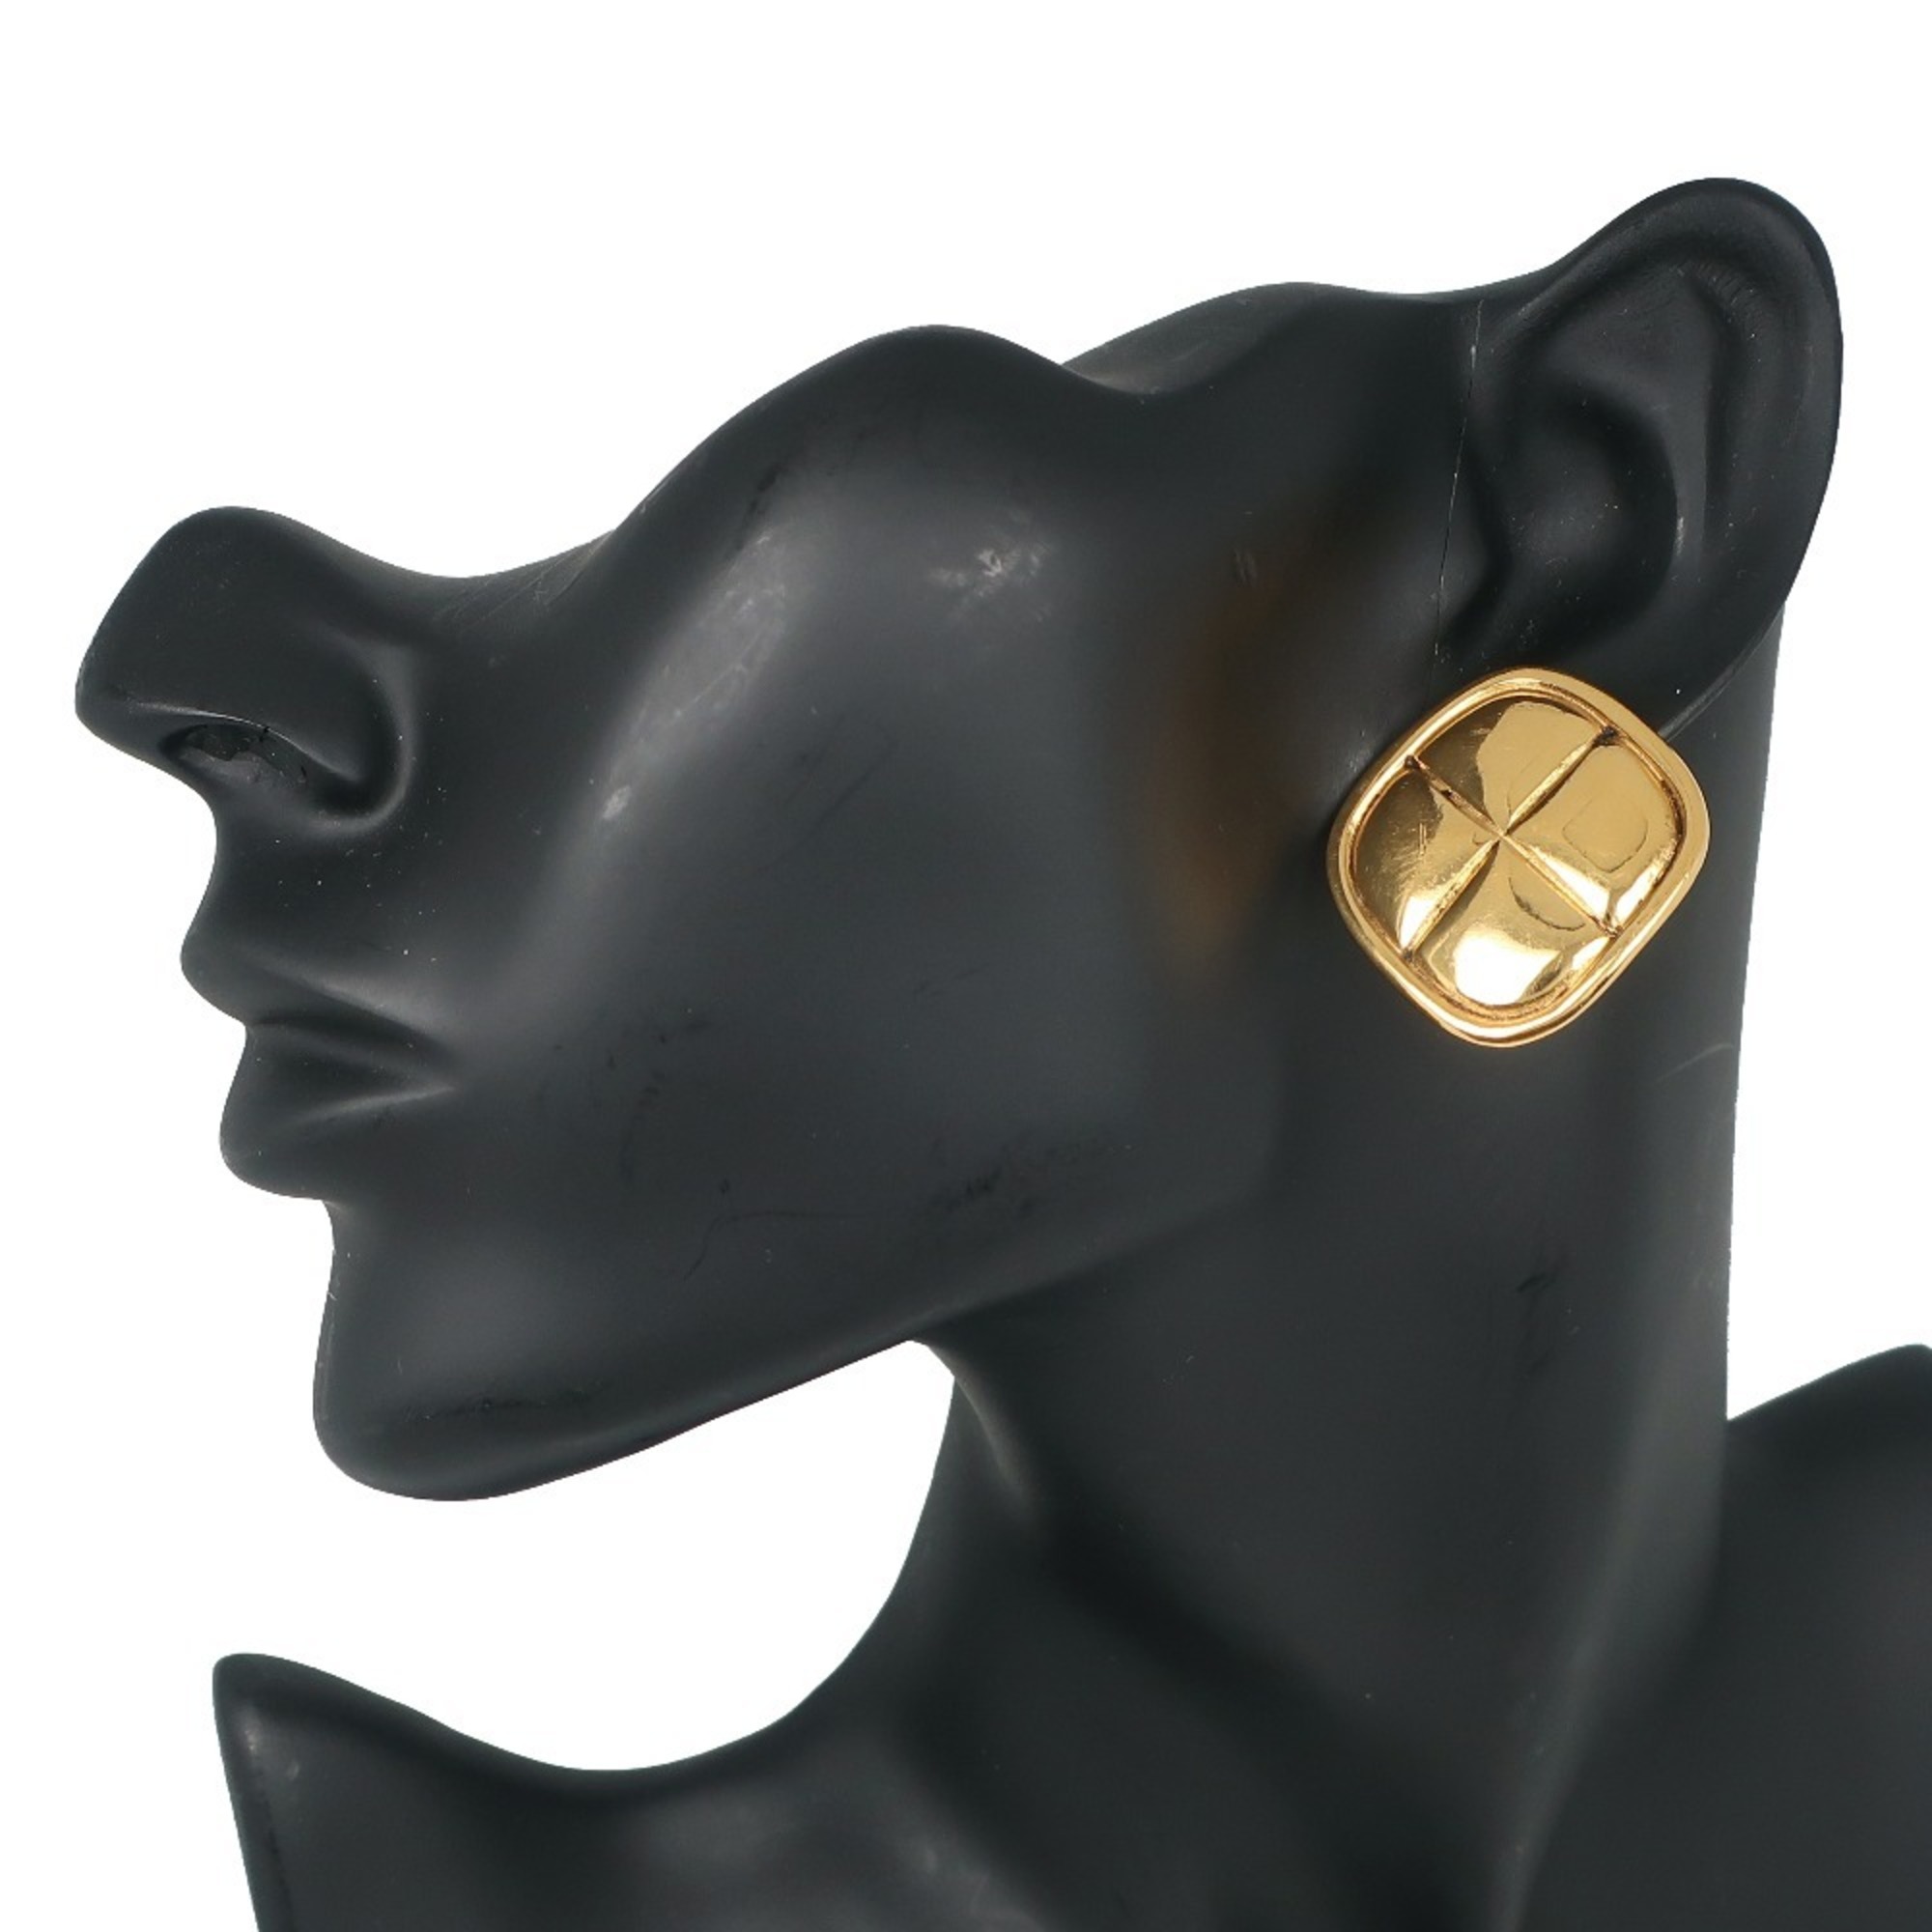 CHANEL Chanel rhombus earrings matelasse vintage gold-plated ladies